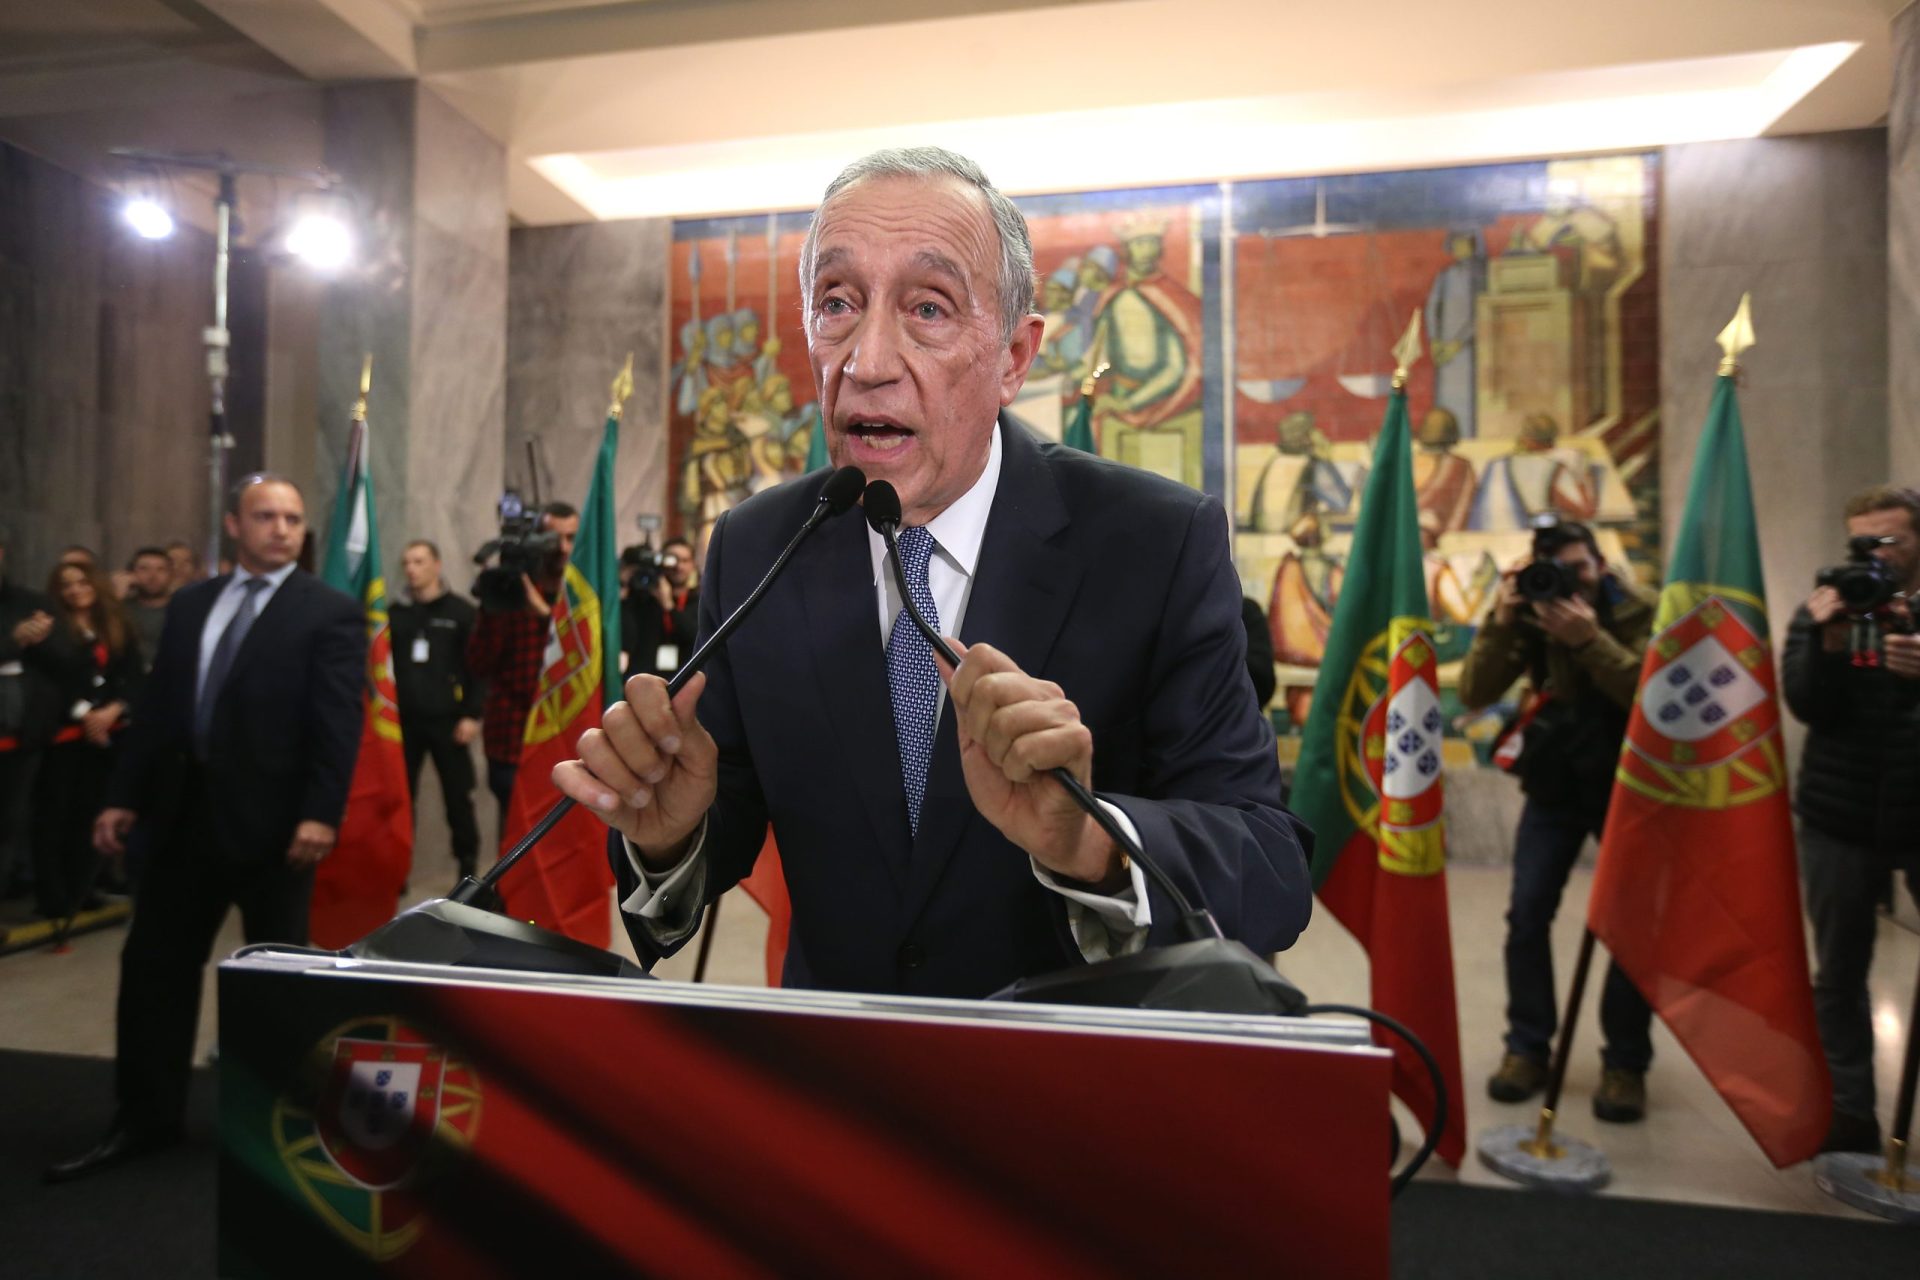 Marcelo visto lá fora: Portugal elege um ‘moderado e conservador’